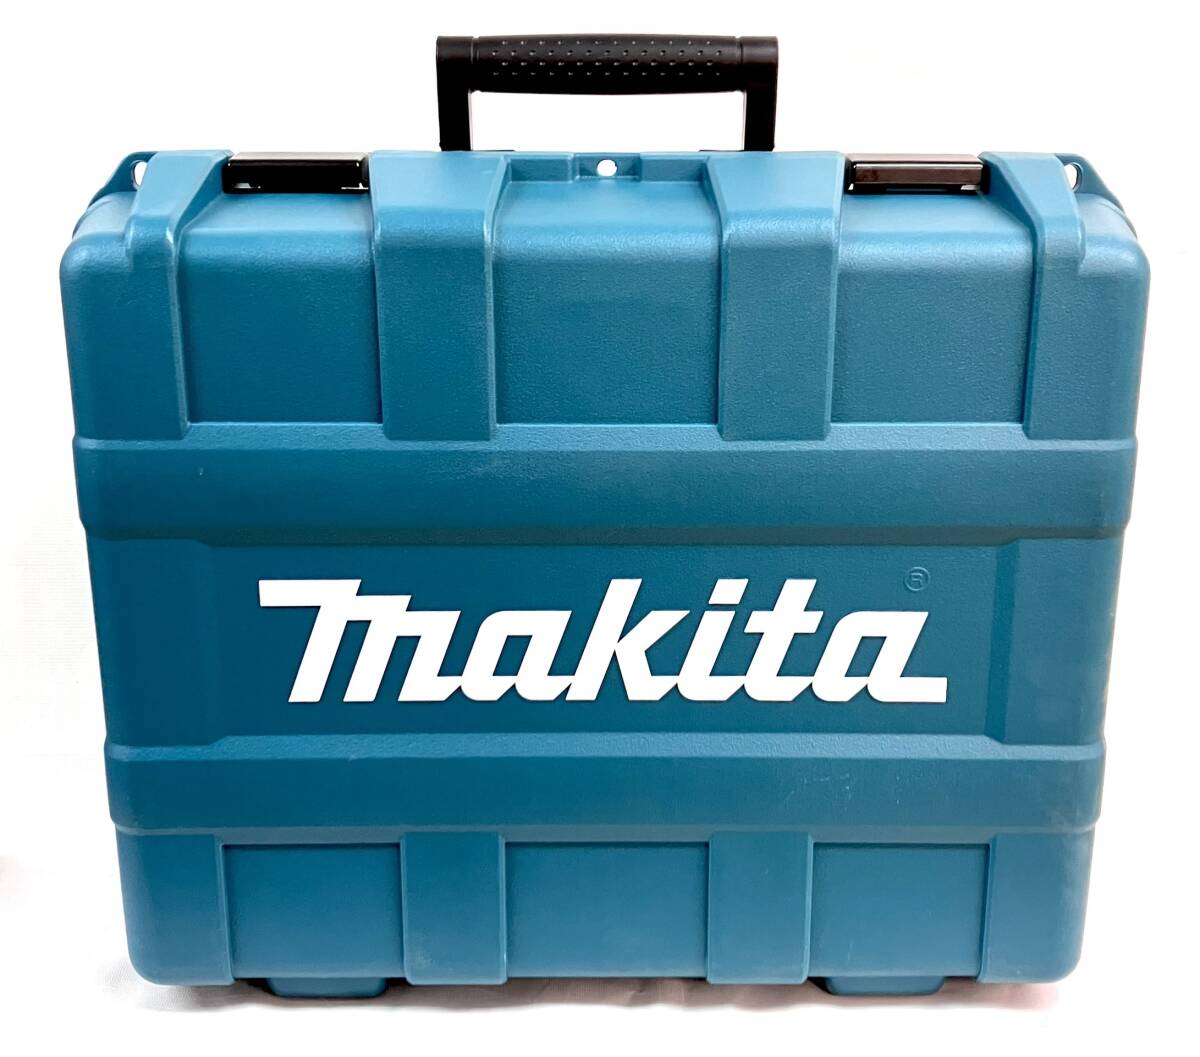 【新品/未使用品】makita マキタ PB001RDX 充電式ポータブルバンドソー + 40Vmax2.5Ah バッテリー2本・急速充電器・専用ハードケース付き♪_実物のお写真です。